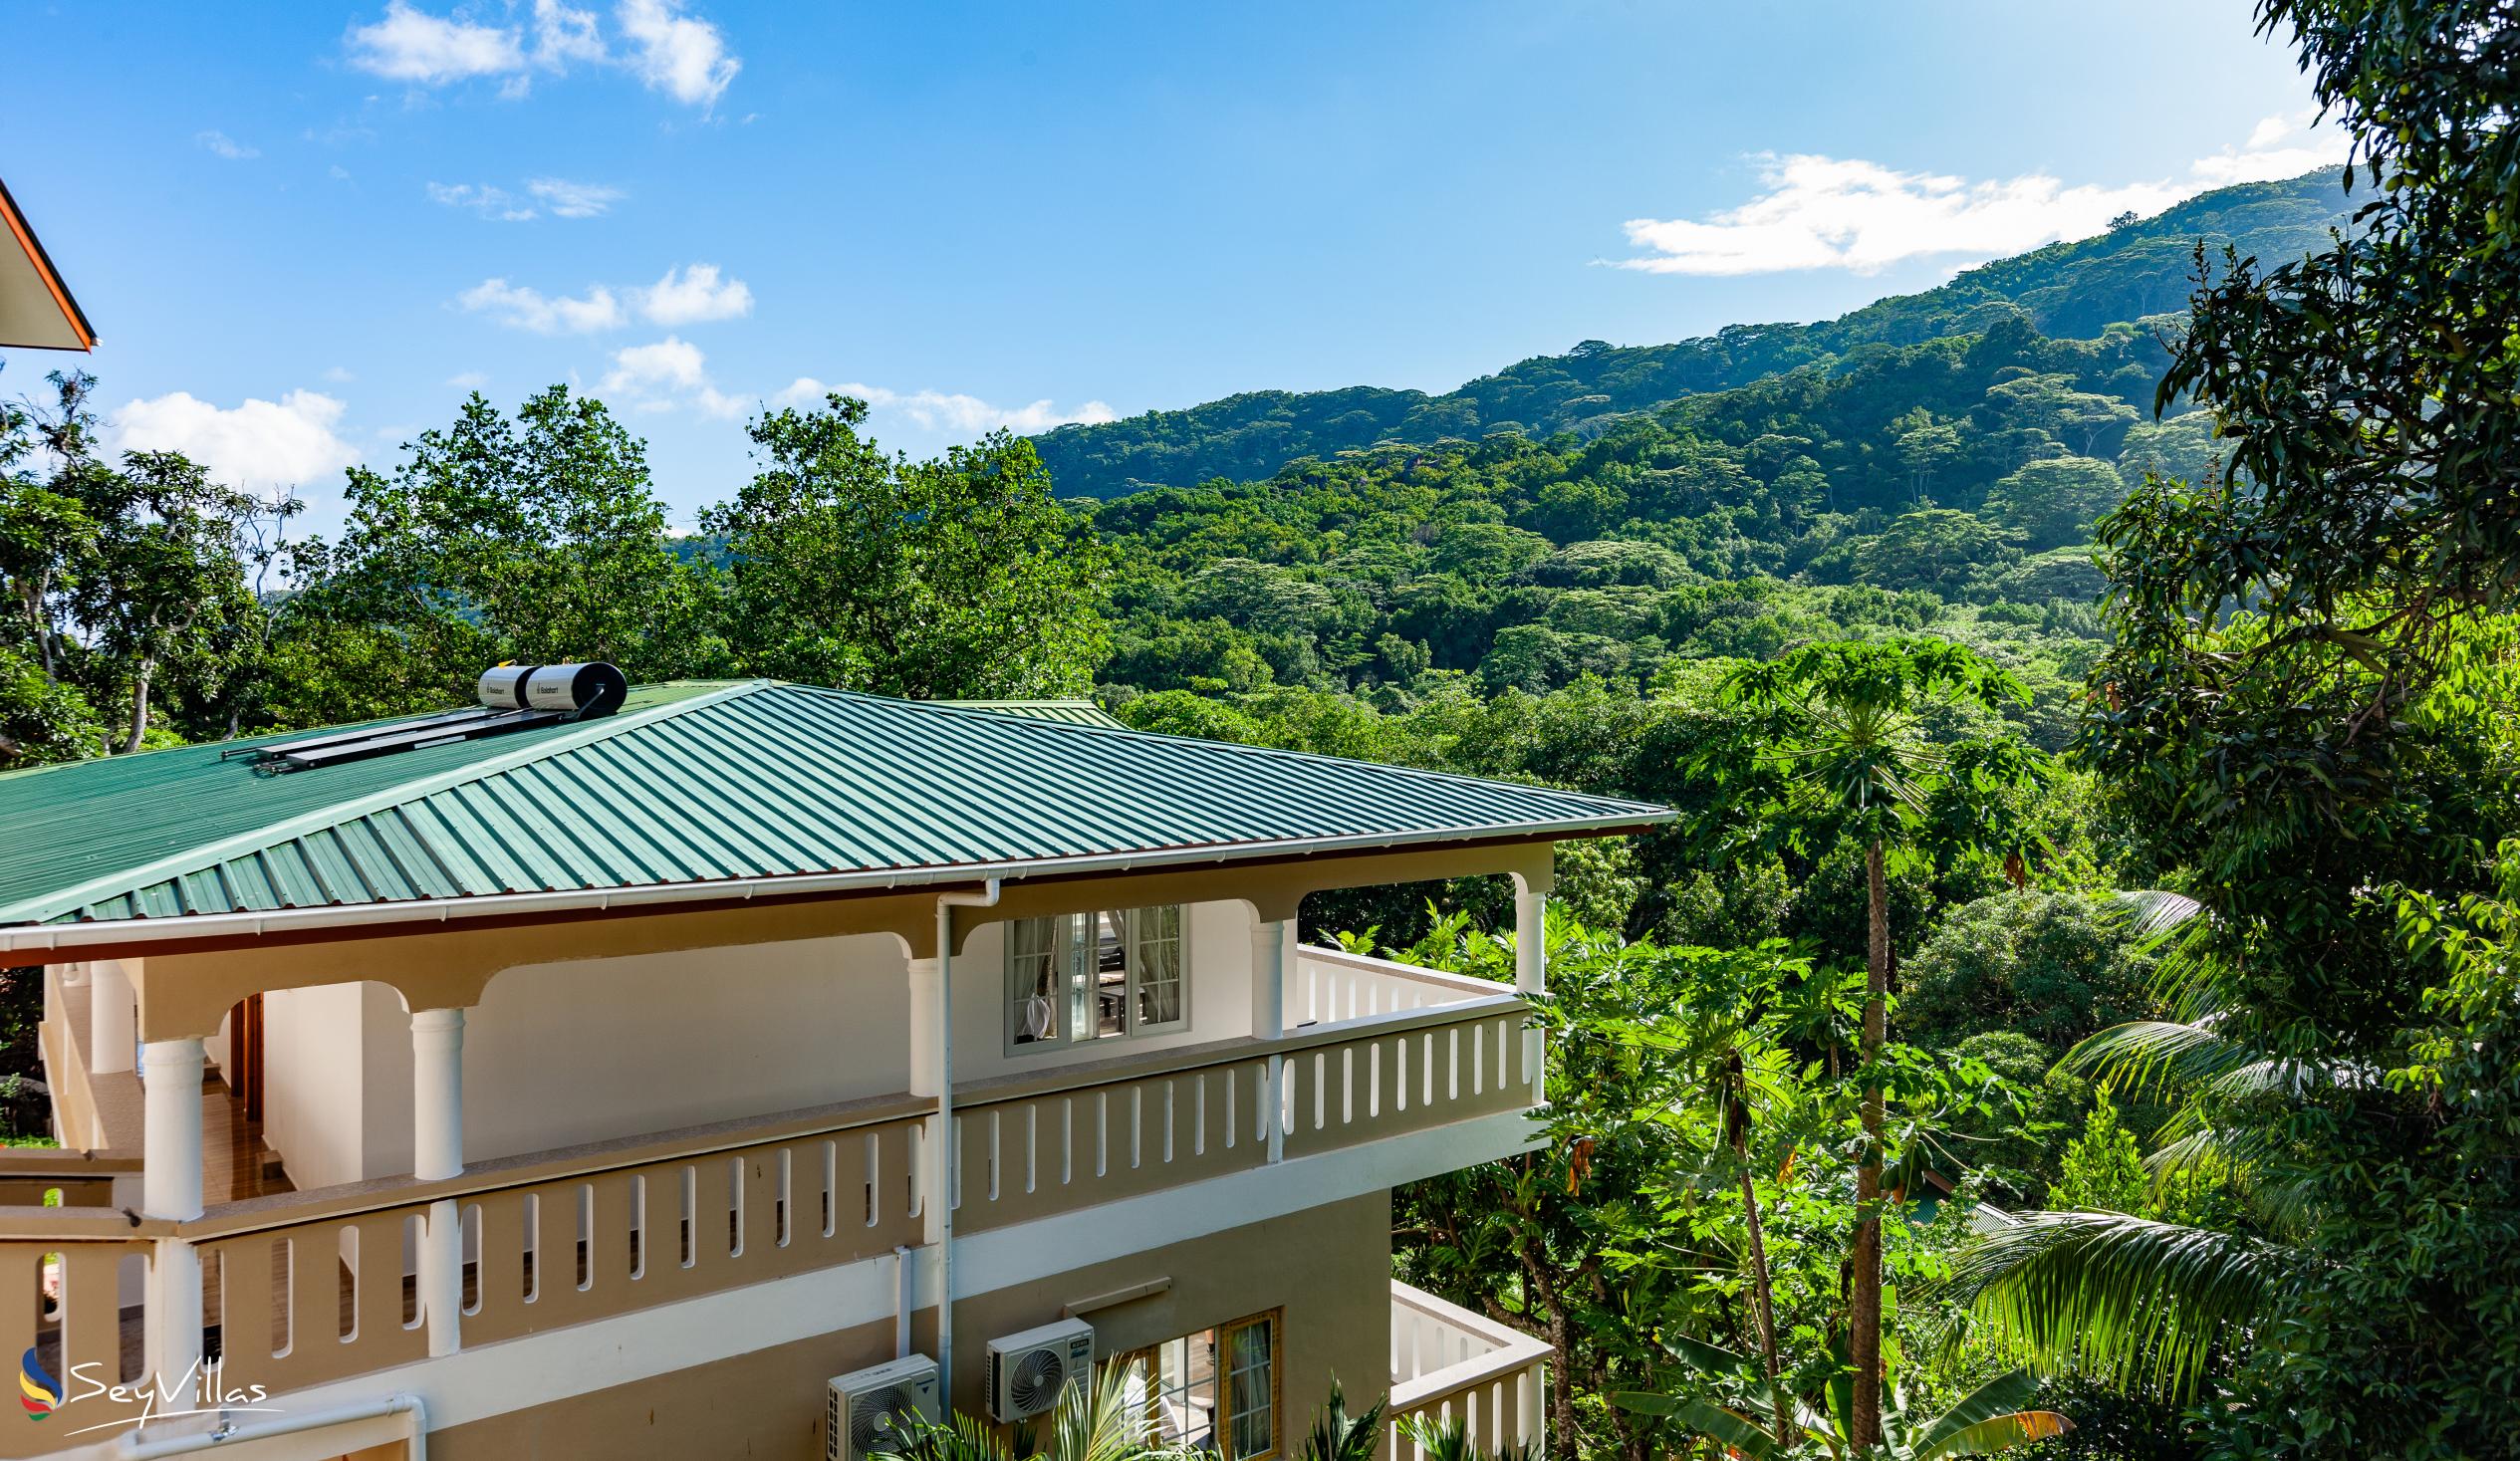 Foto 6: Mountain View Hotel - Aussenbereich - La Digue (Seychellen)